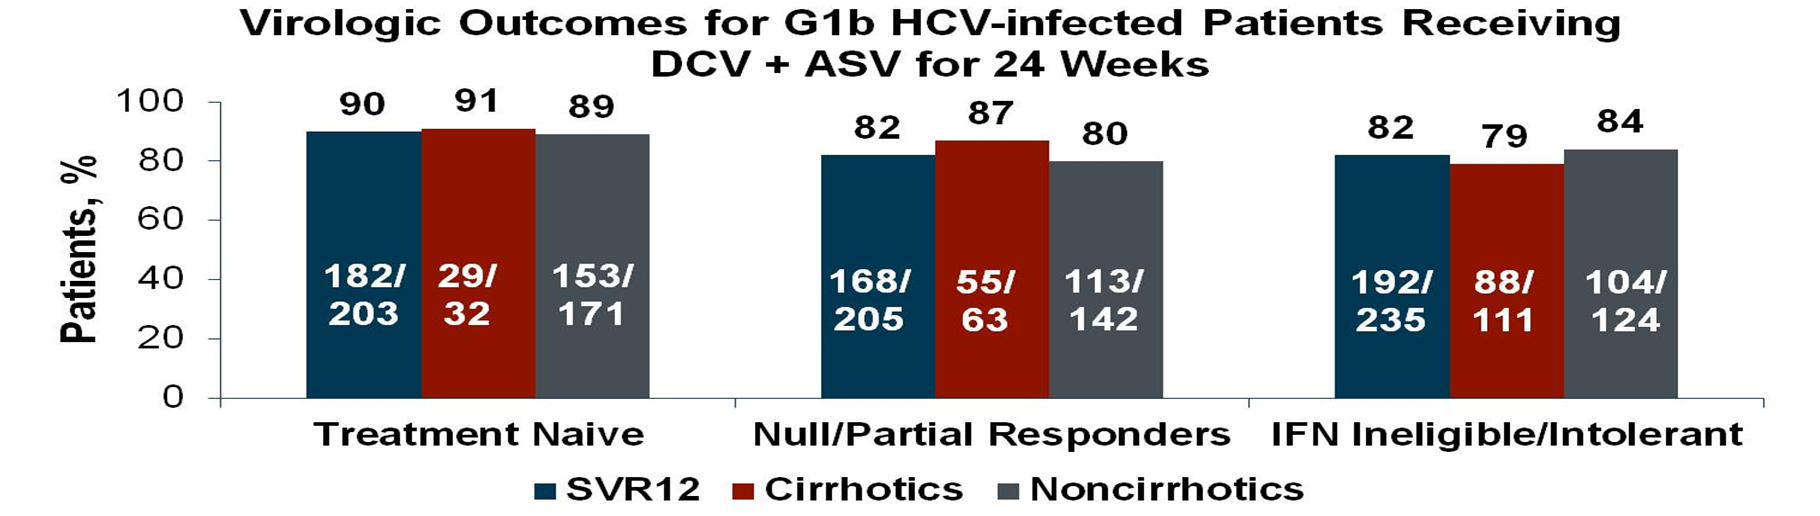 HALLMARK-DUAL: Daclatasvir + Asunaprevir Genotip 1b DAC +ASV (24 hf) Naiv: % 90 KVY Sirotik olan Yanıtsız: ve olmayan hastalar